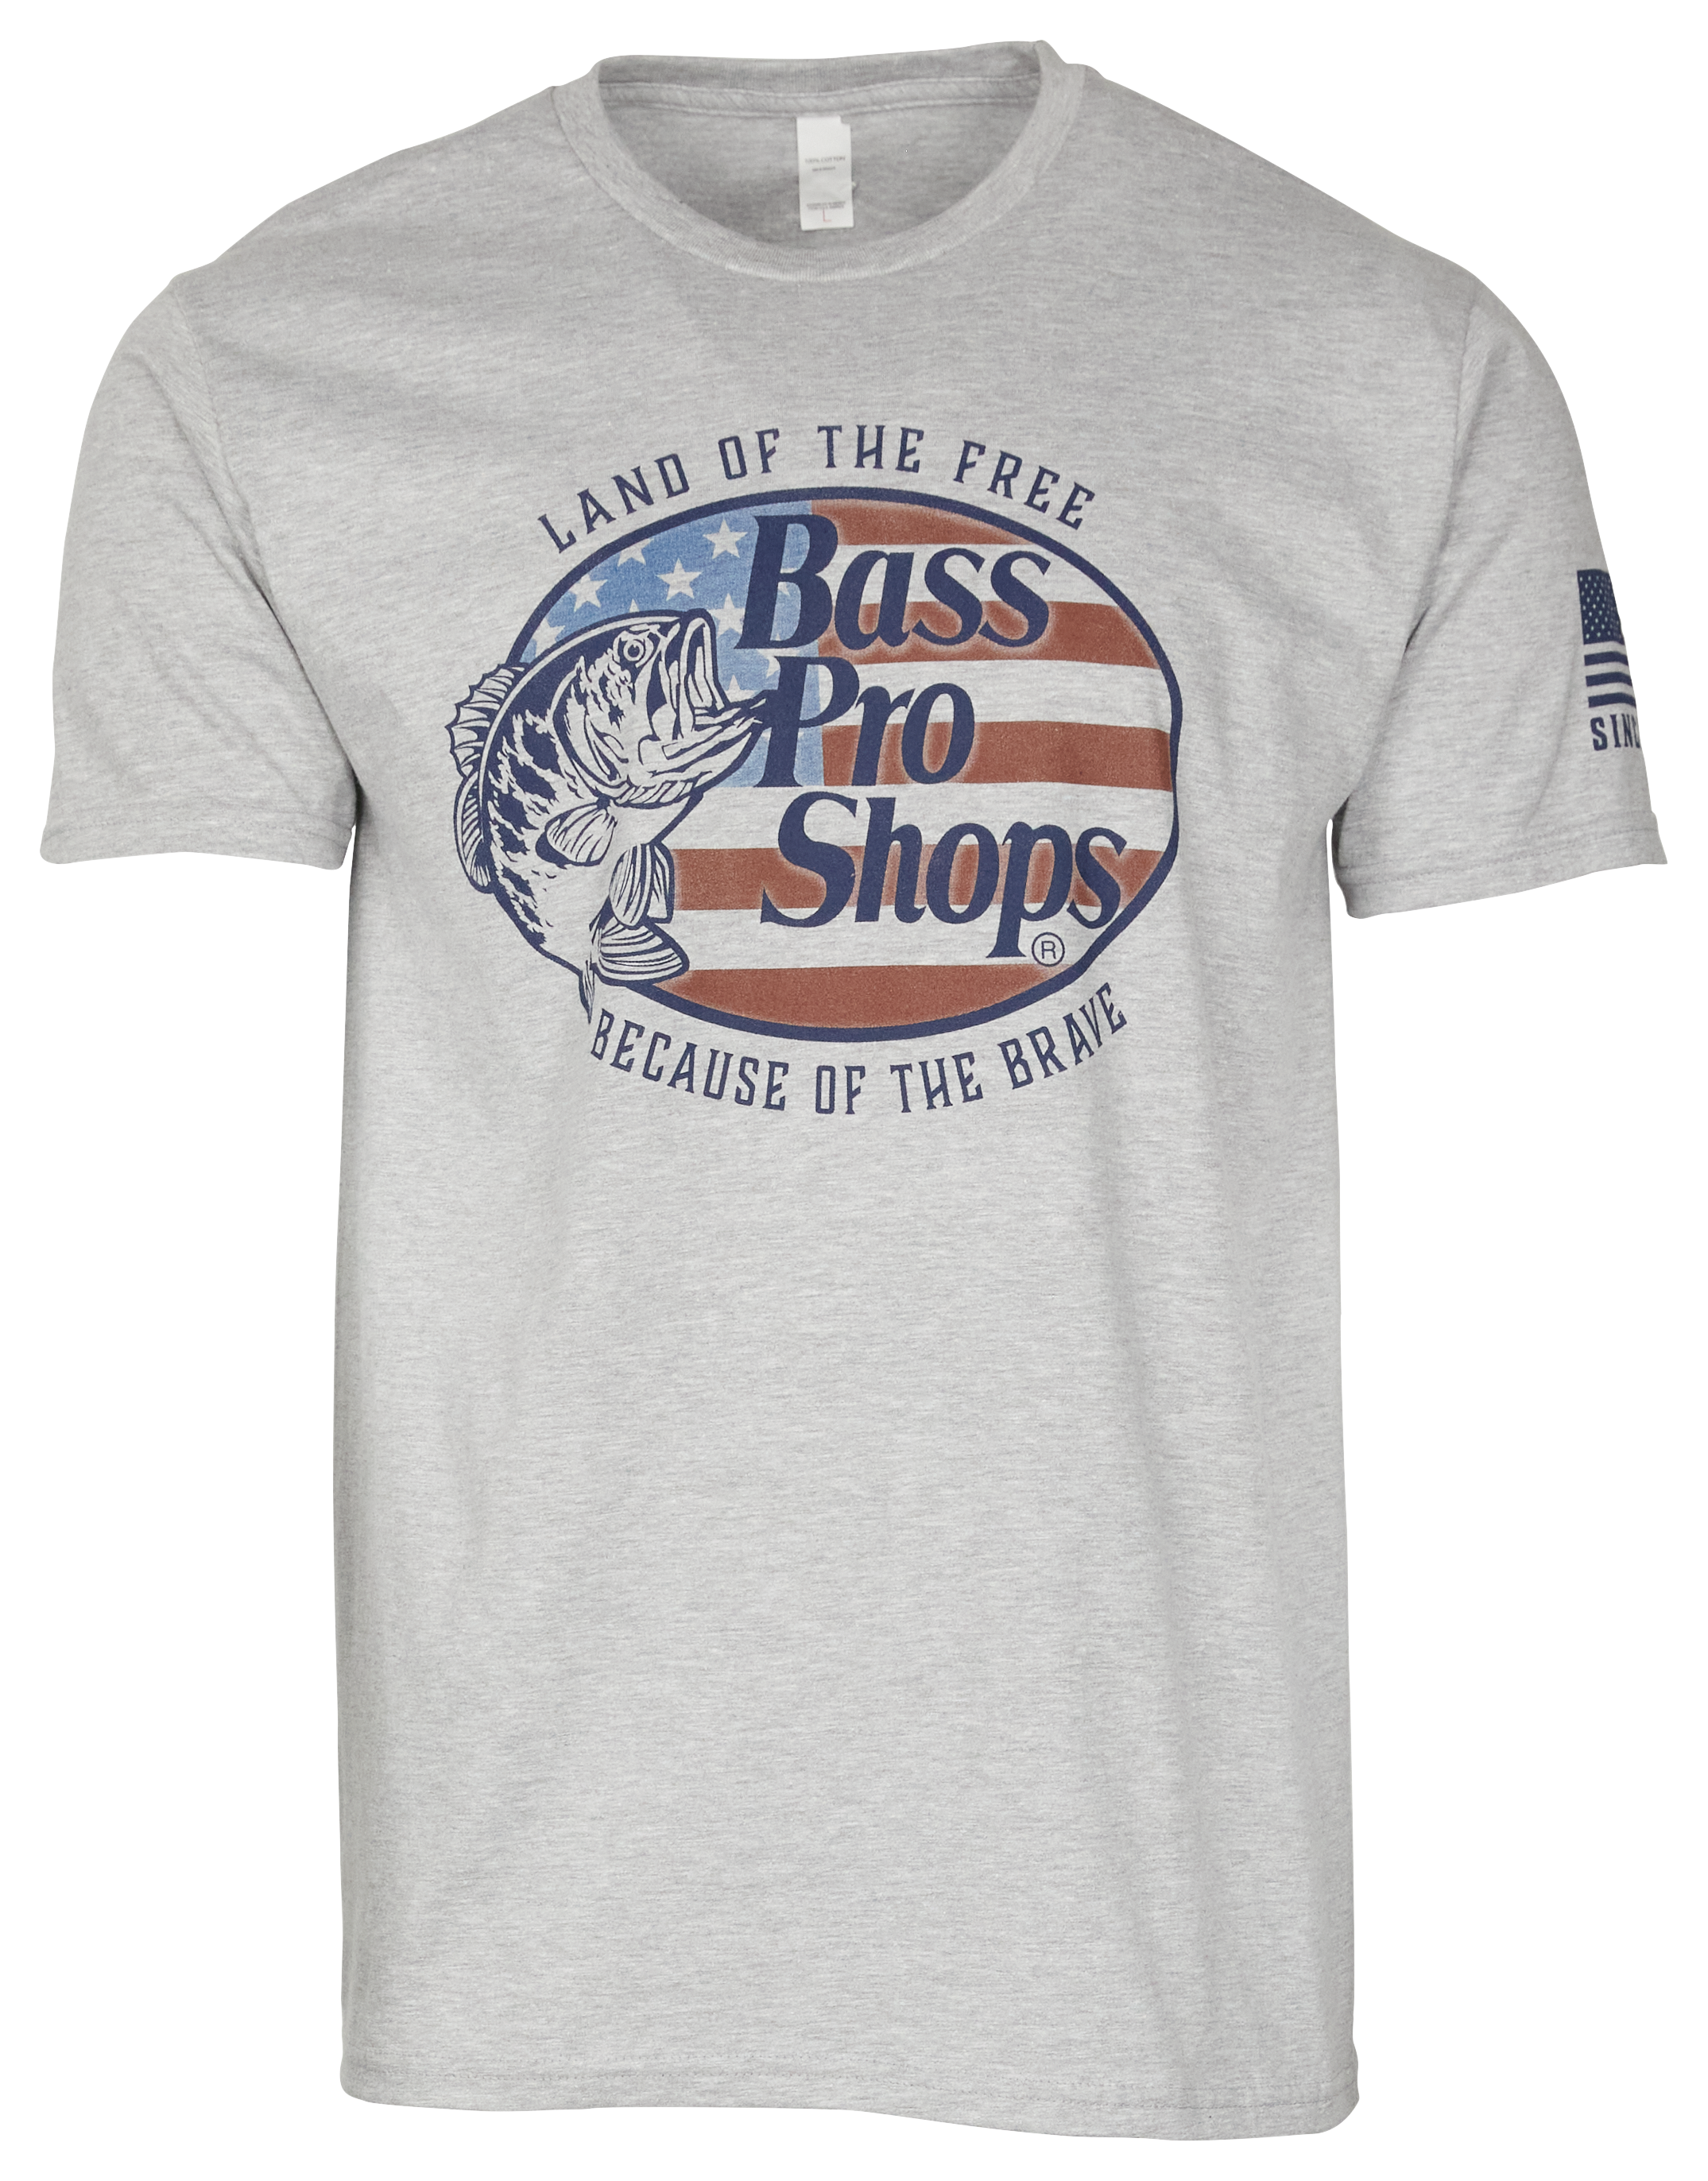 Bass Pro Shops, Shirts, Bass Pro Shop Longsleeve Brown Shirt For Men